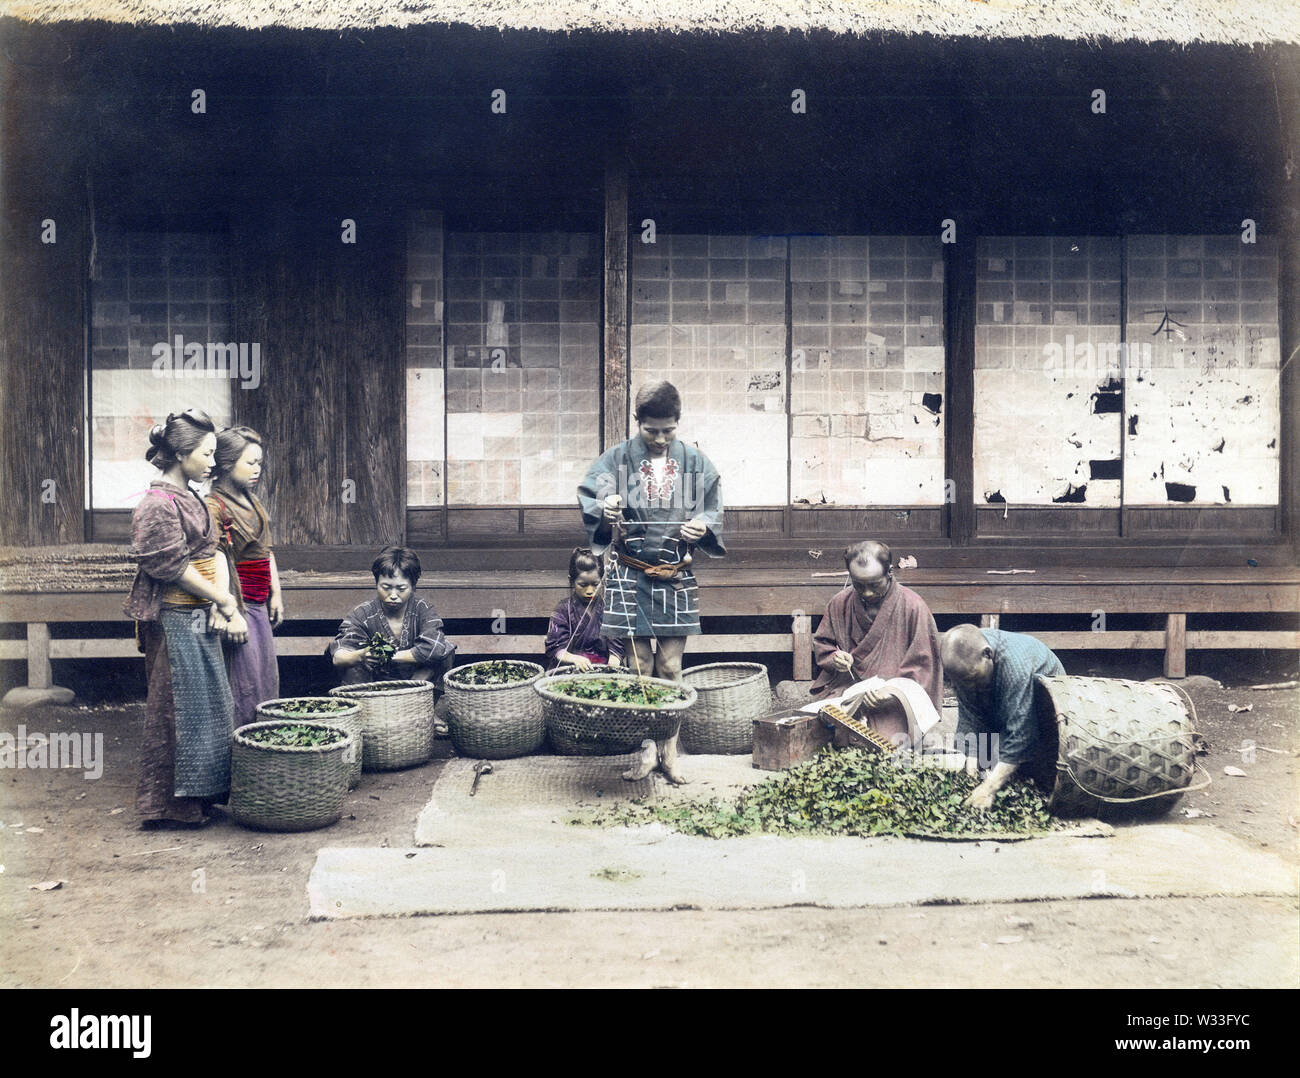 [1890s Japan - Japanische Bauern wiegen Tee] - ein Mann mit einem Gewicht von Tee, während andere Platten zu machen ist. Zwei Frauen sind auf der Suche. 19 Vintage albumen Foto. Stockfoto